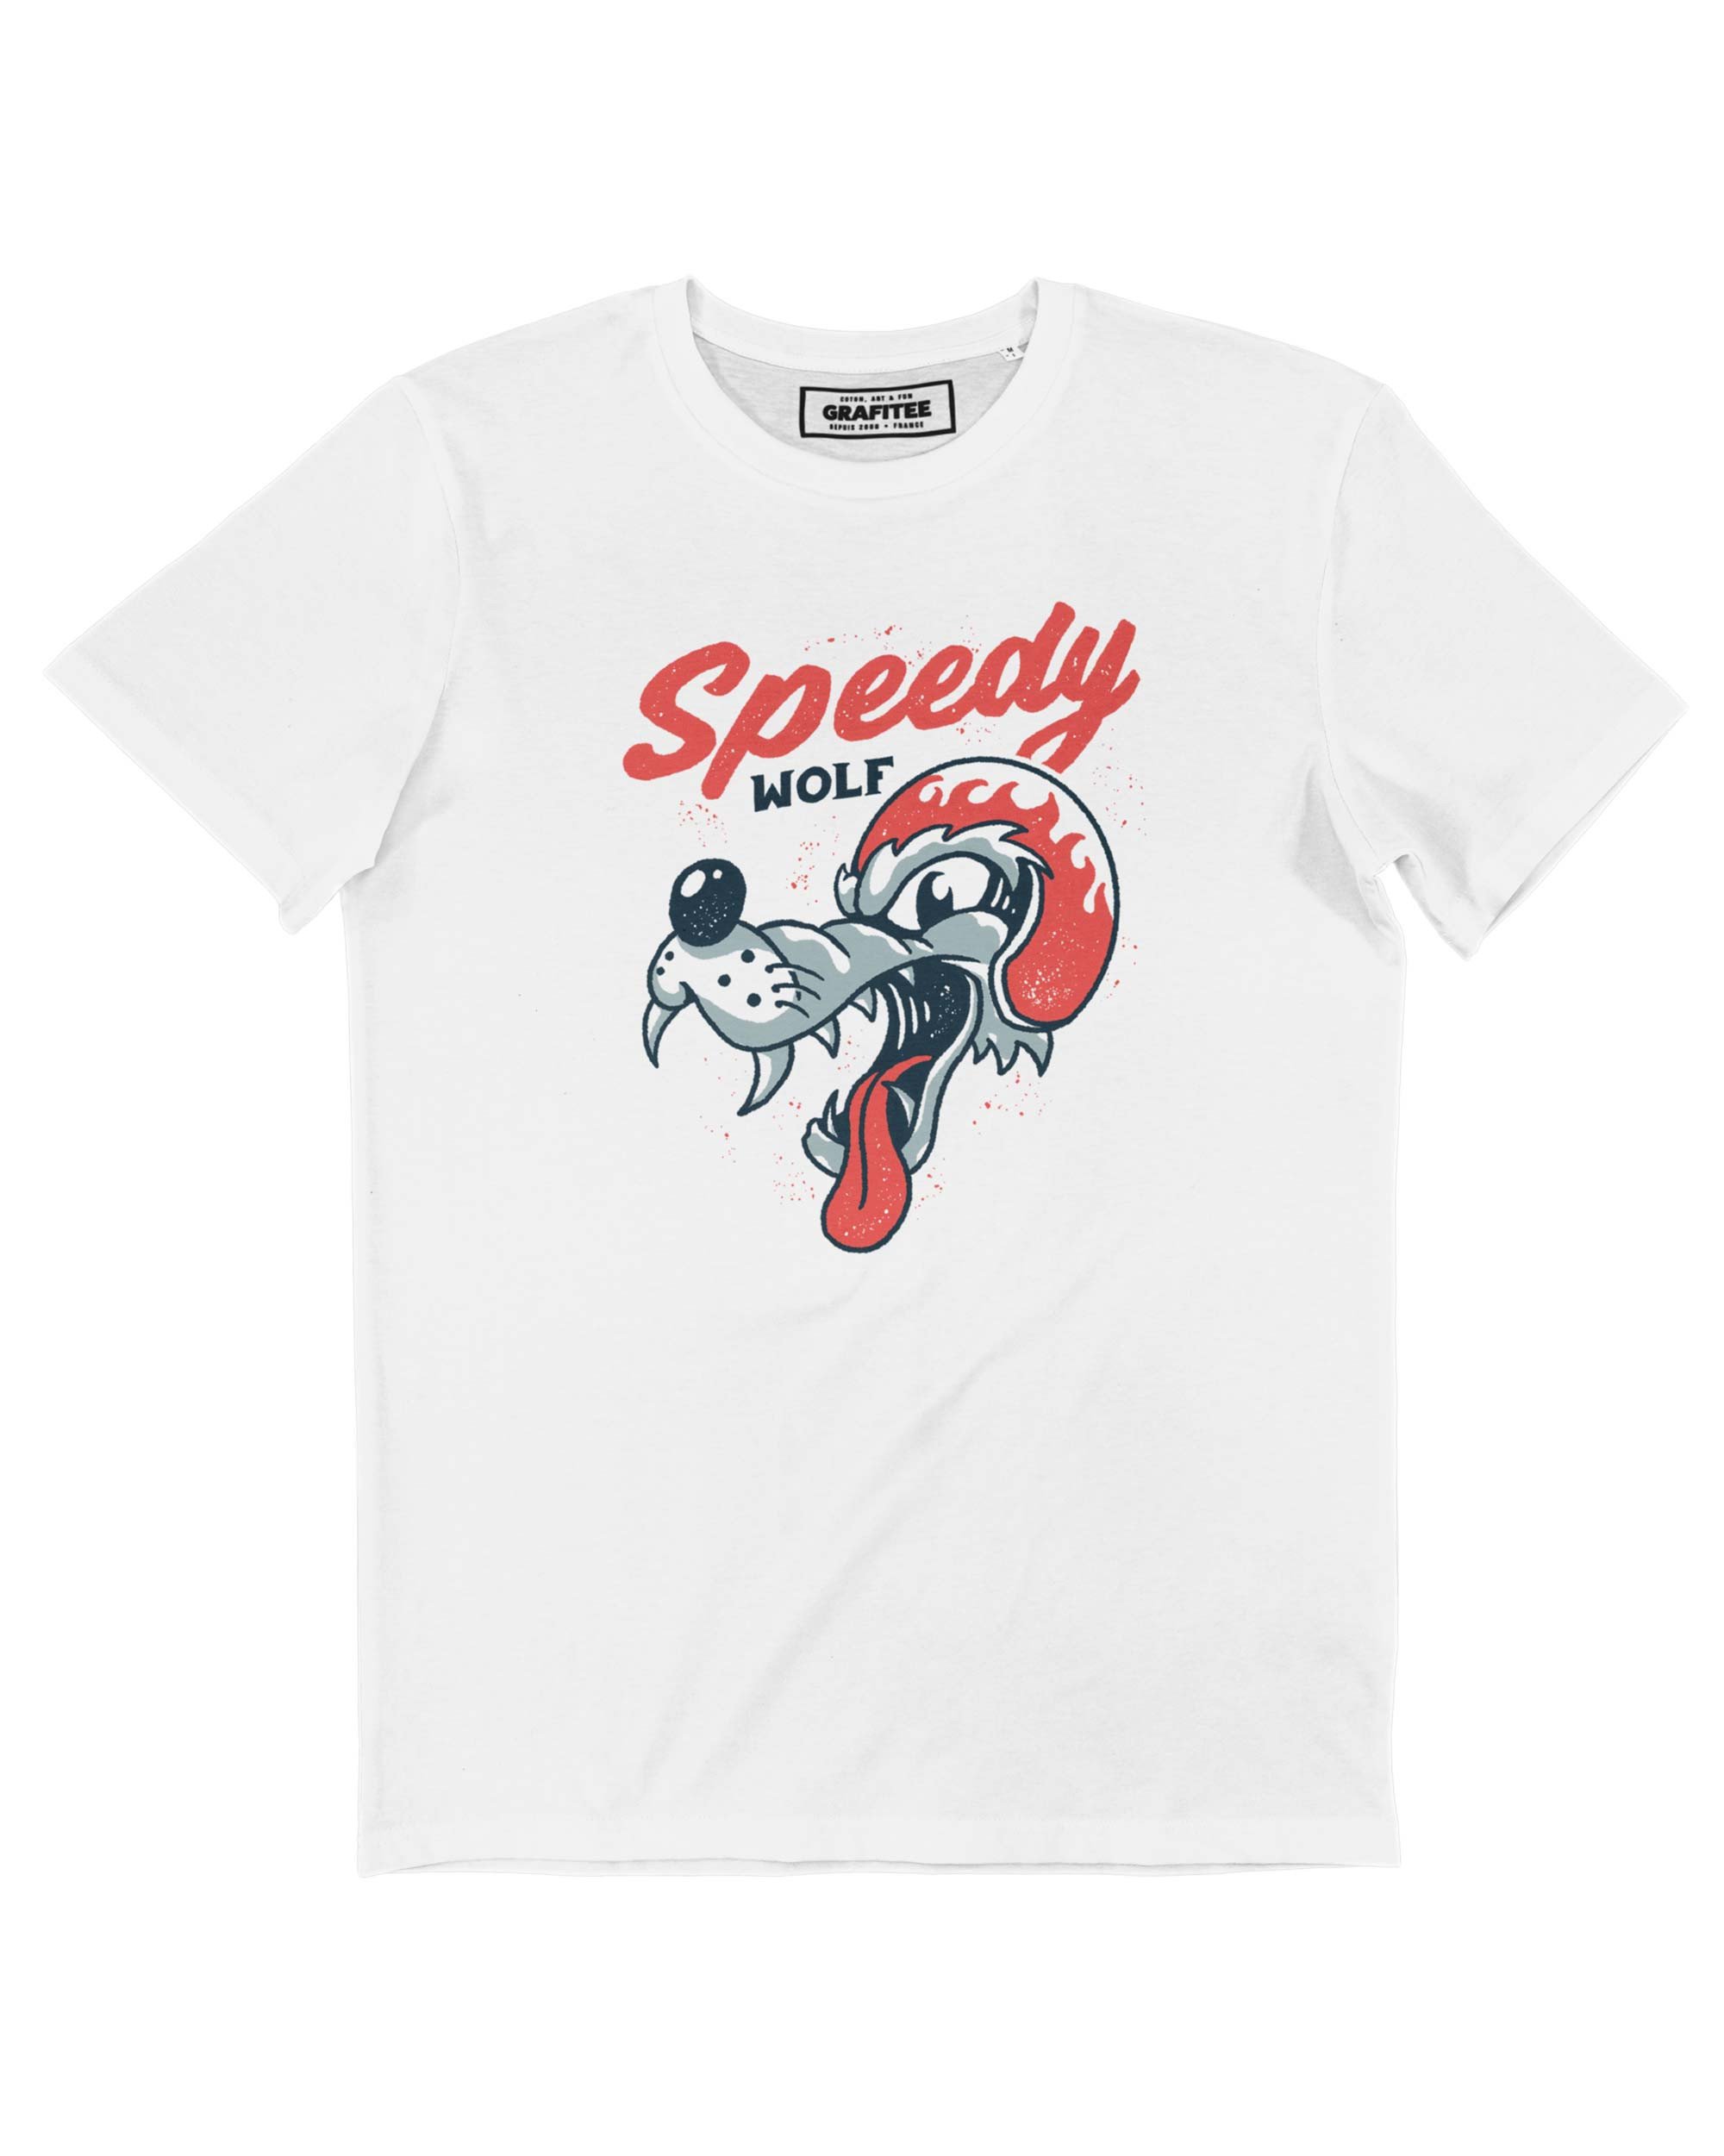 T-shirt Speedy Wolf Grafitee